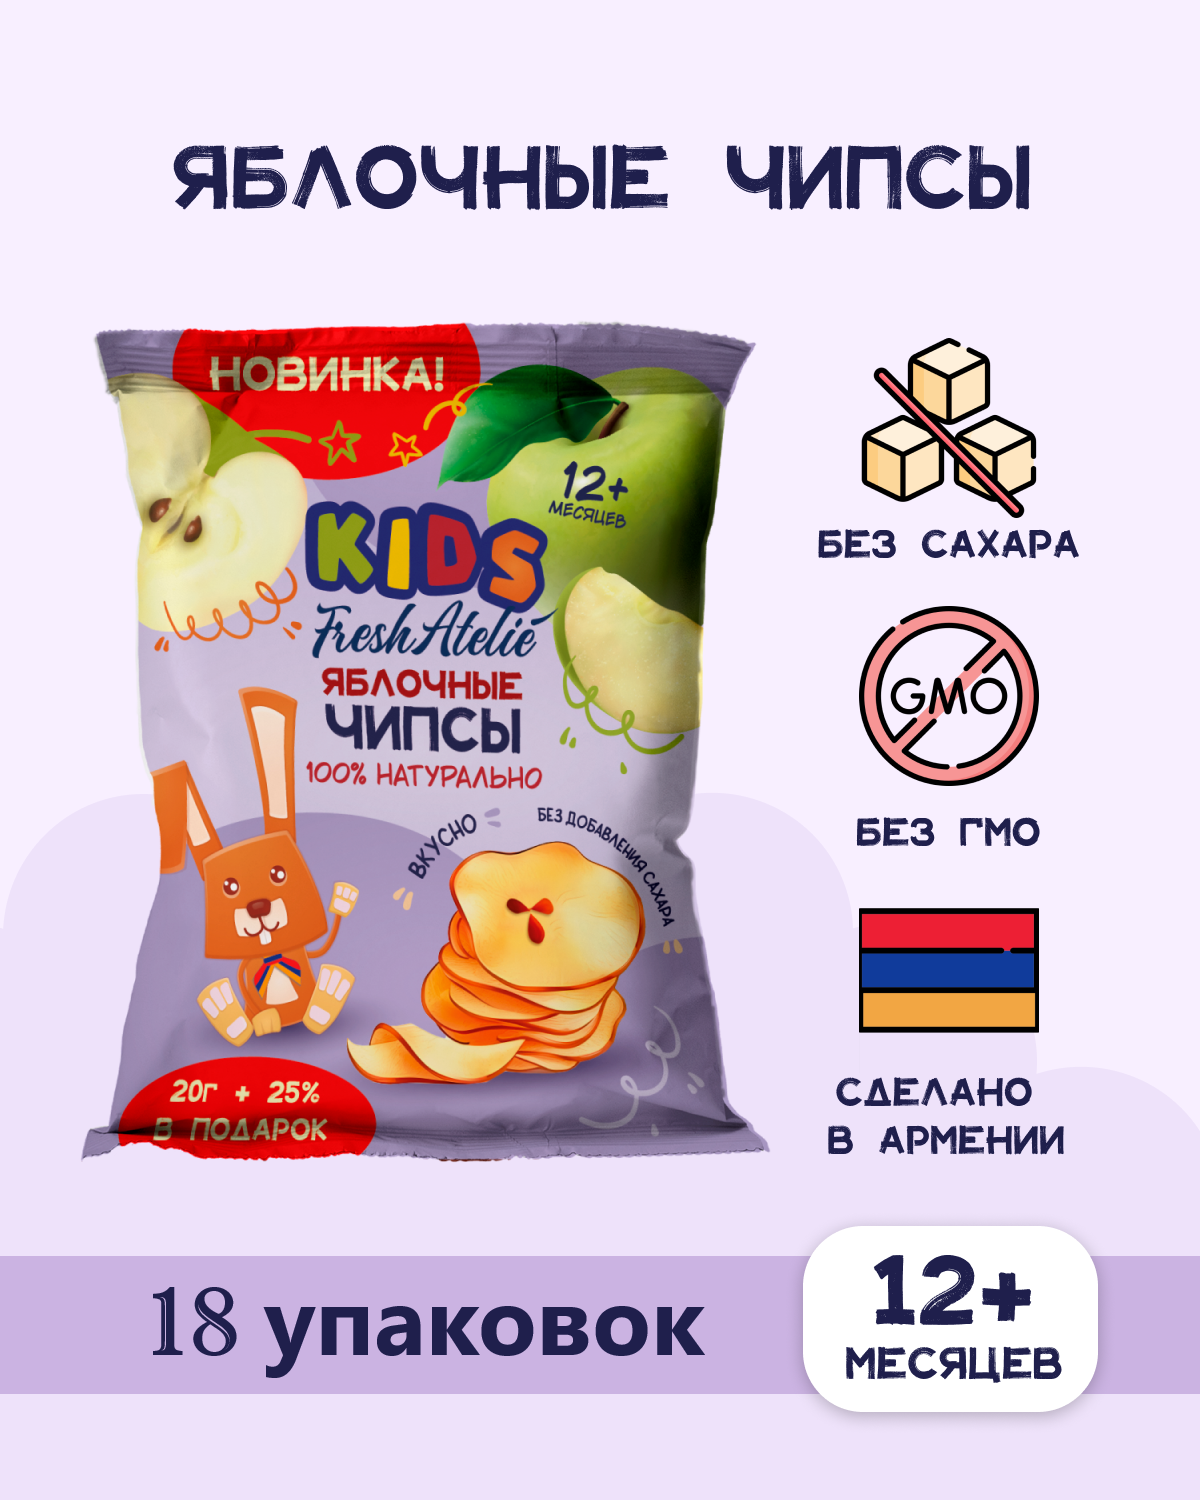 Чипсы яблочные FRESH ATELIE KIDS для детей раннего возраста 20гр + 25%, 18 упаковок чипсы биг бон 75 г краб